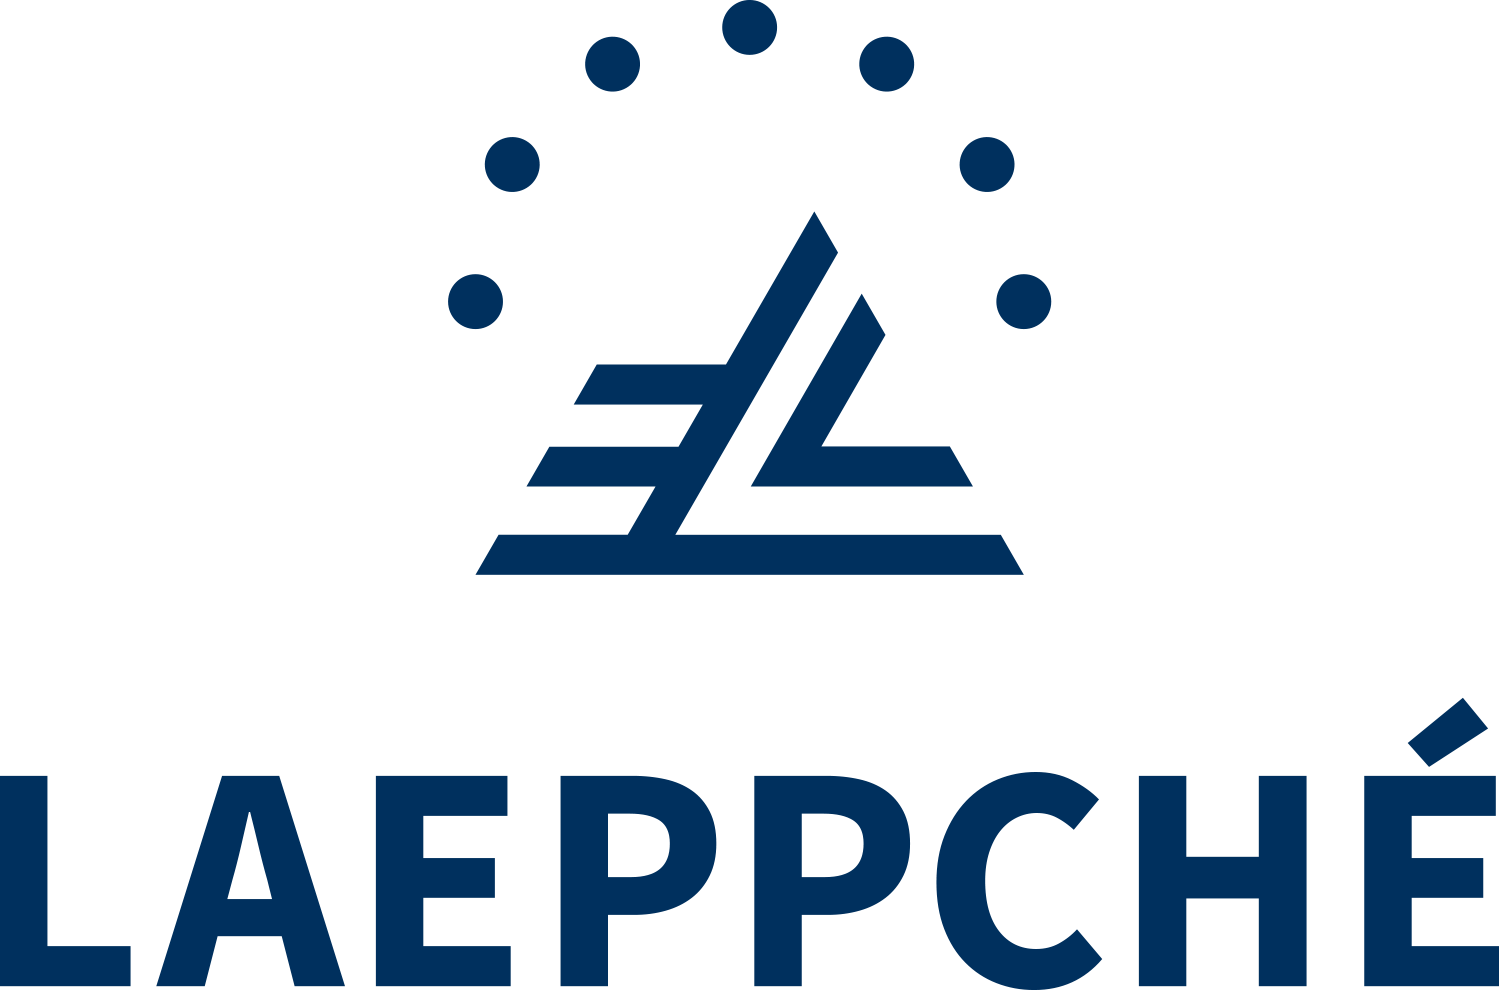 Laeppche_Logotype_4c